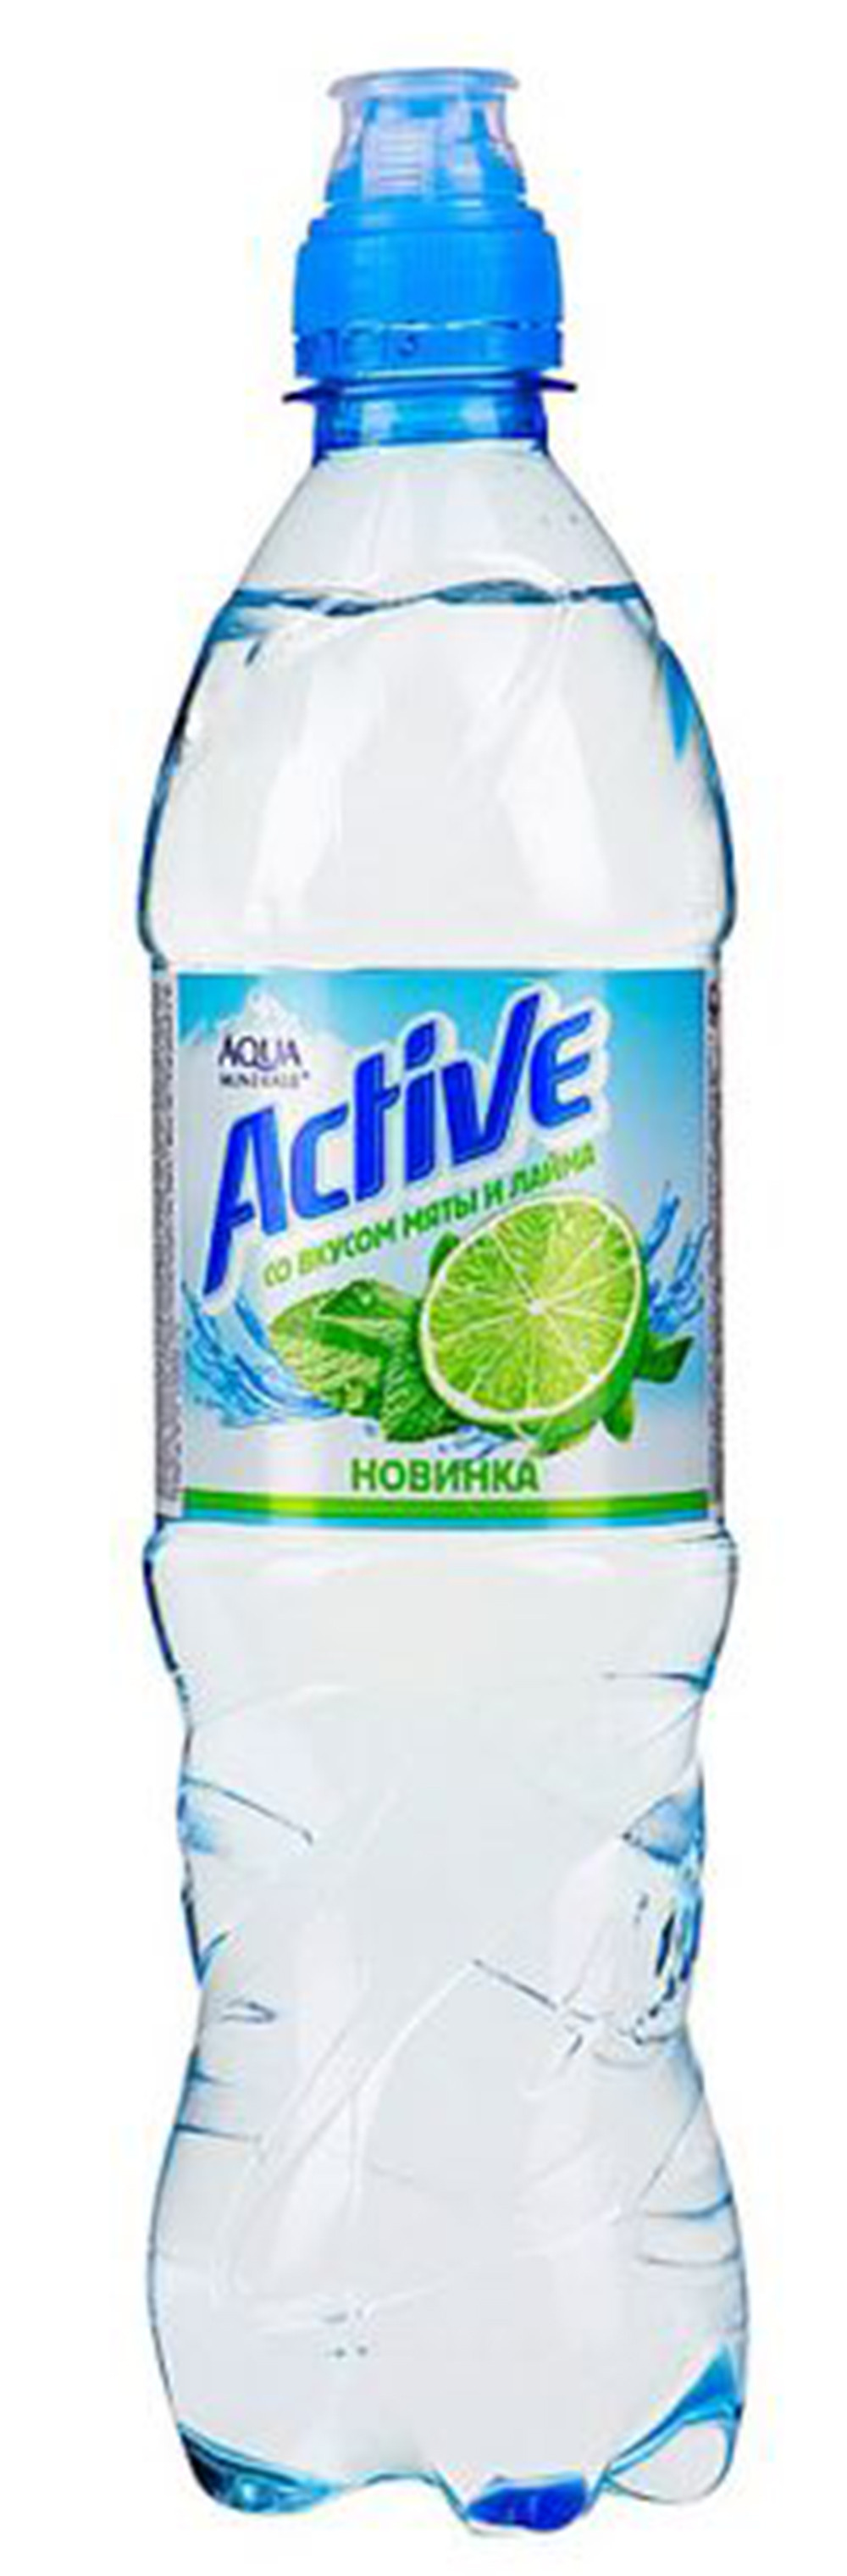 Питьевая вода пищевой продукт. Аква Минерале Актив мята лайм. Aqua minerale Active лайм. Аква Минерале мята лайм 0.5. Aqua minerale Актив.